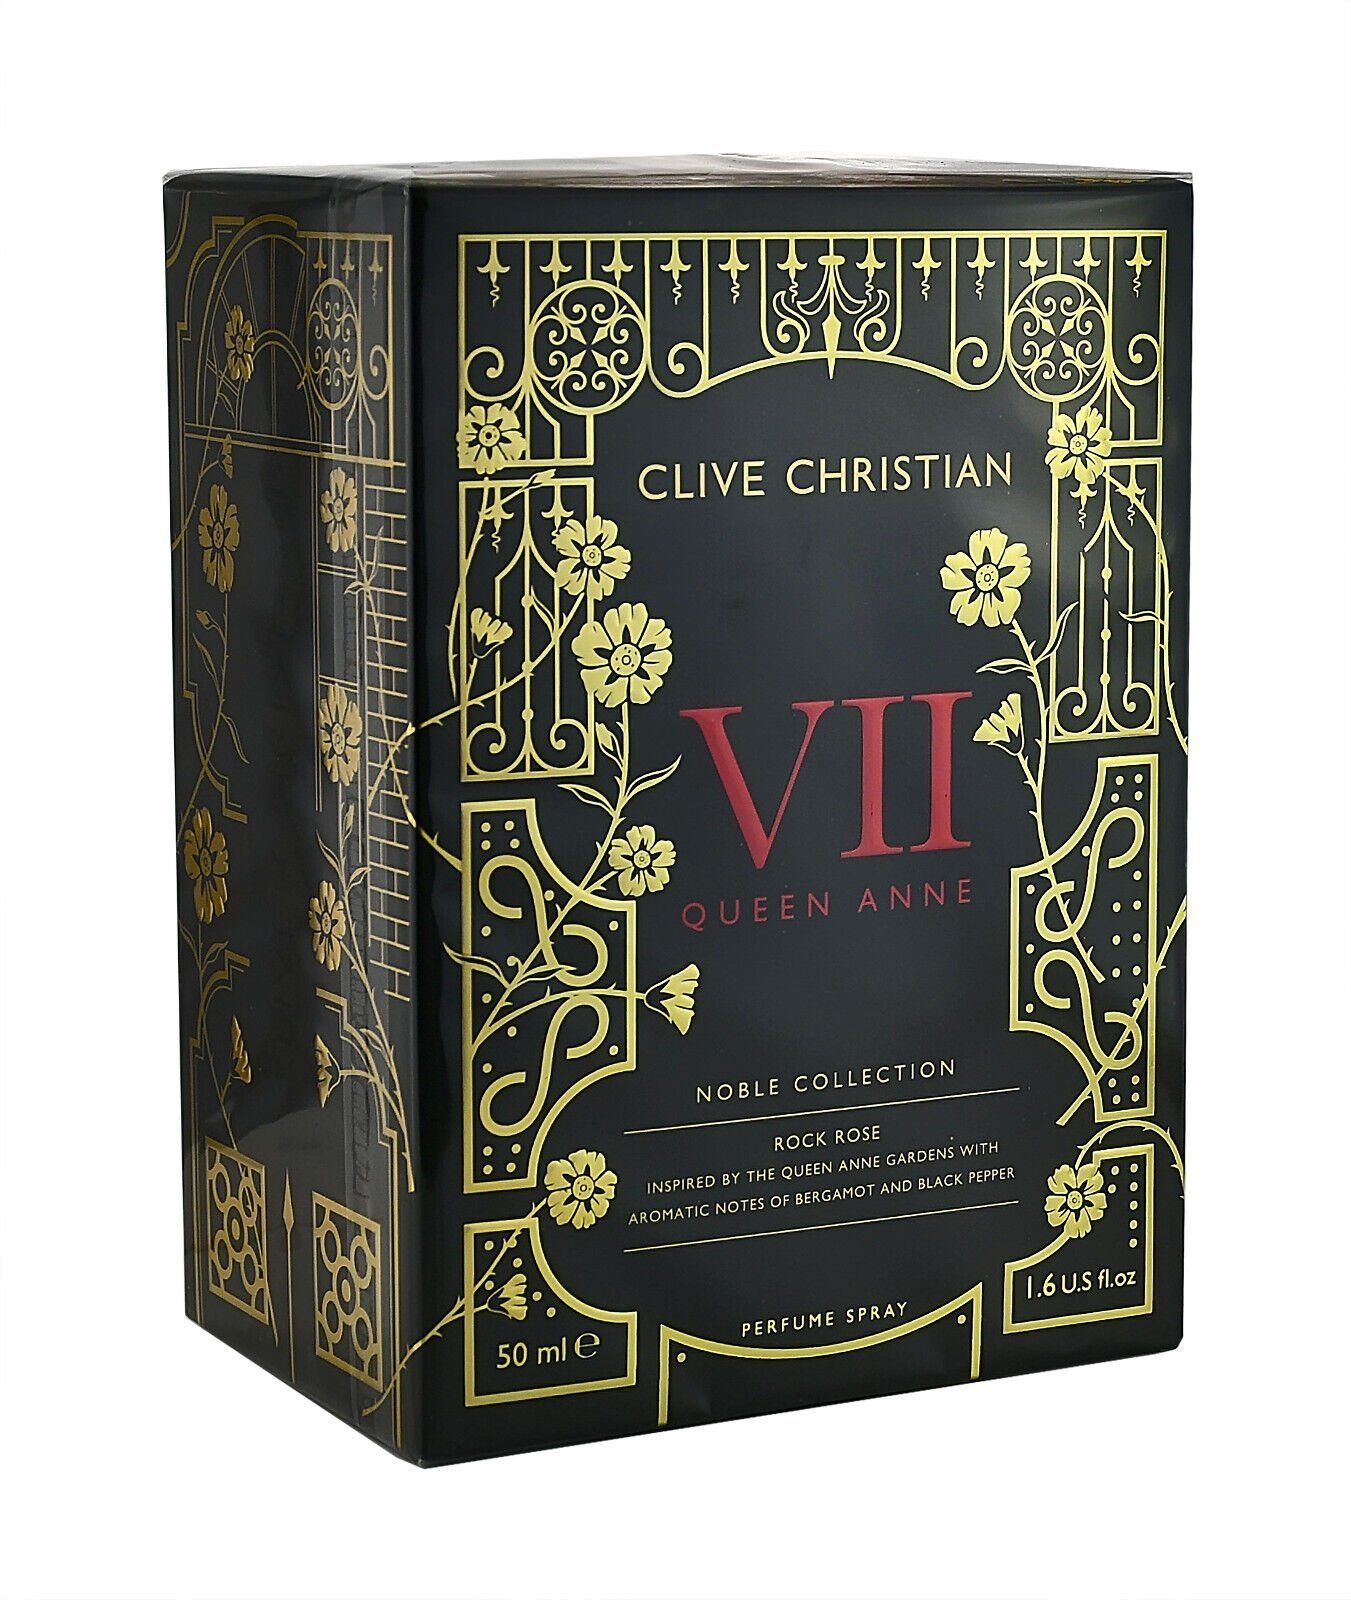 Clive Christian Eau de Parfum CLIVE CHRISTIAN NOBLE COLLECTION ROCK ROSE MASCULINE 50ML